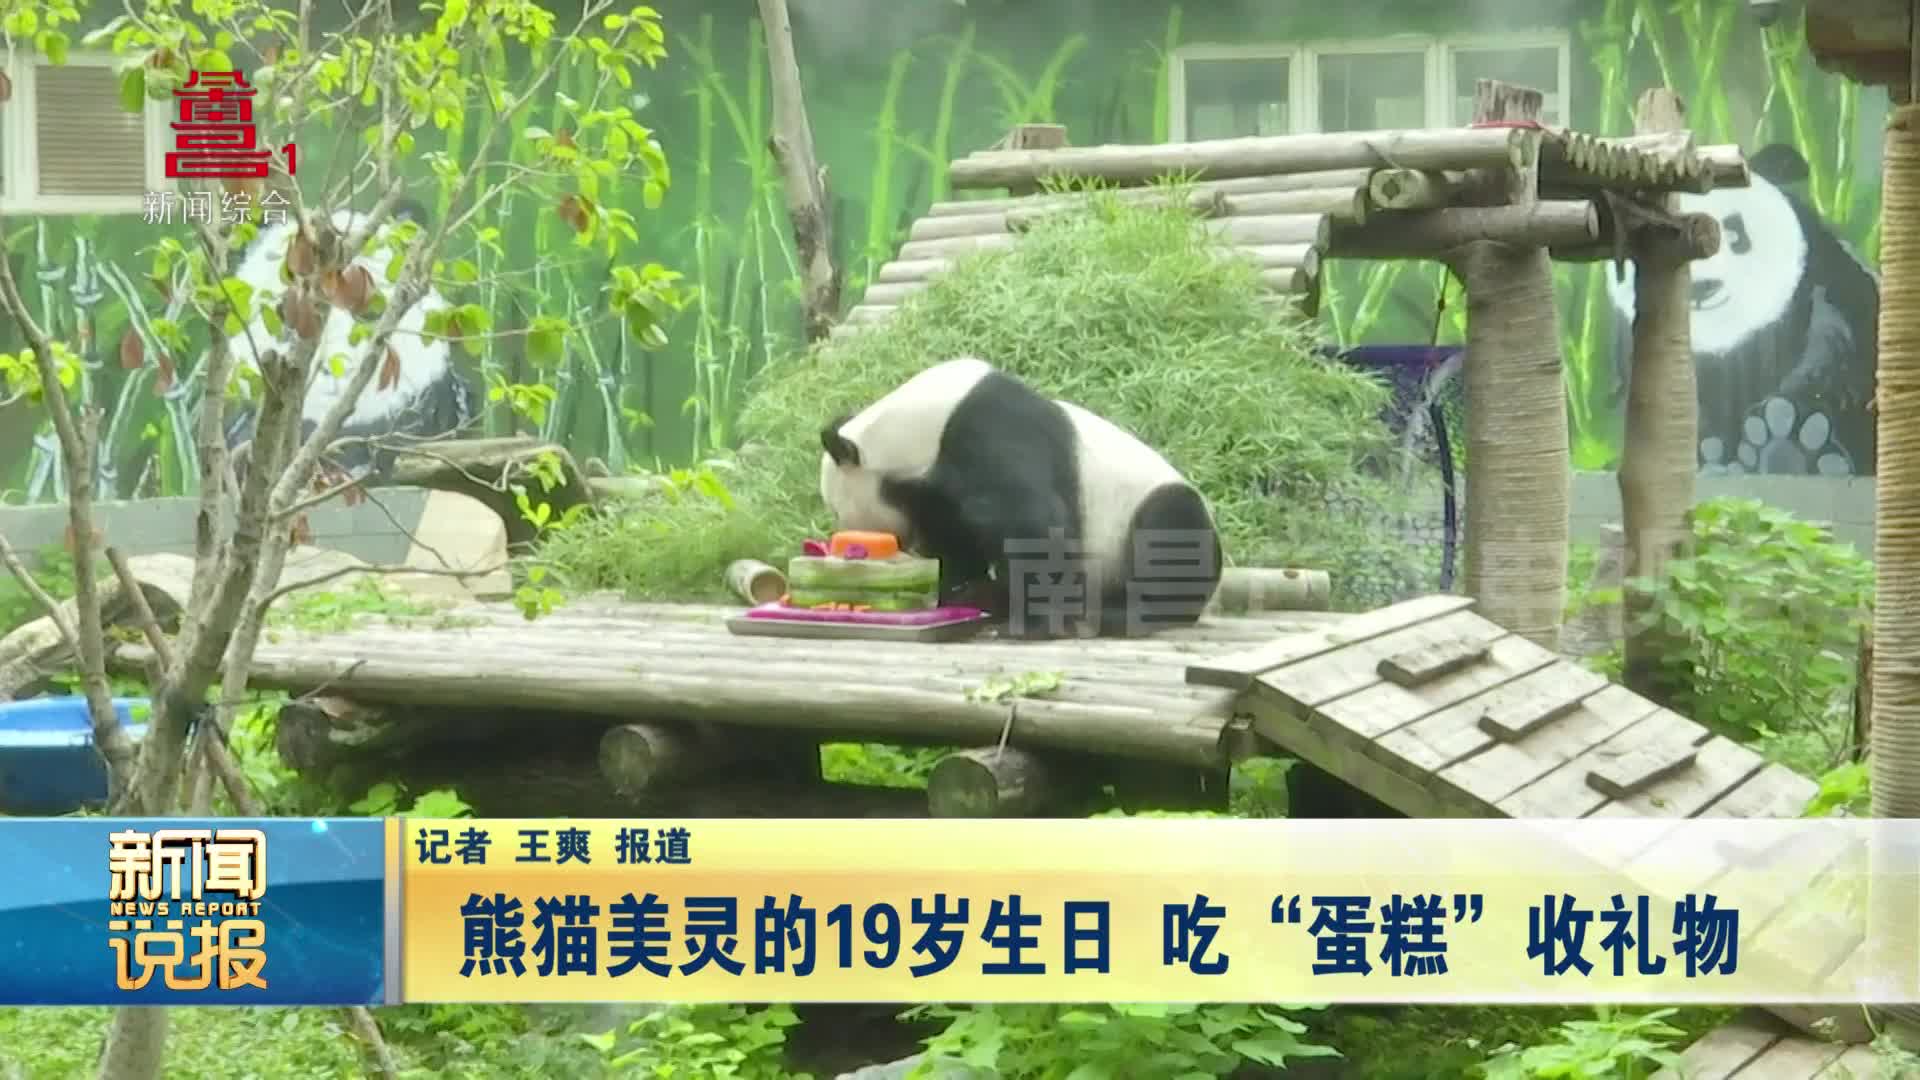 熊猫美灵的19岁生日 吃“蛋糕”收礼物